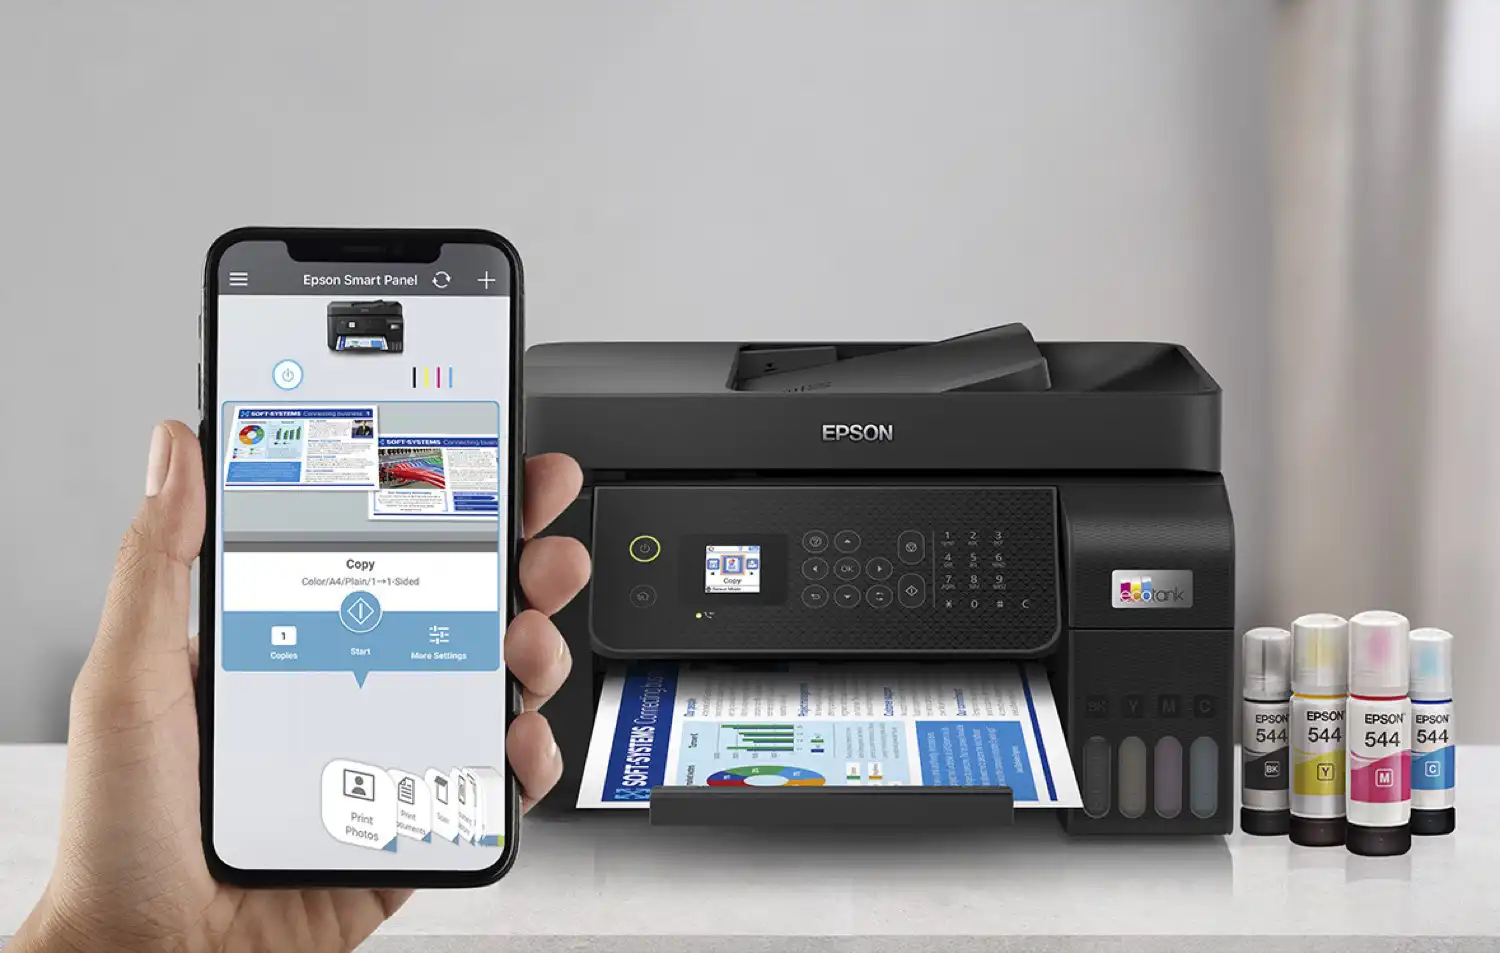 Epson Smart Panel facilita la impresión desde smartphones